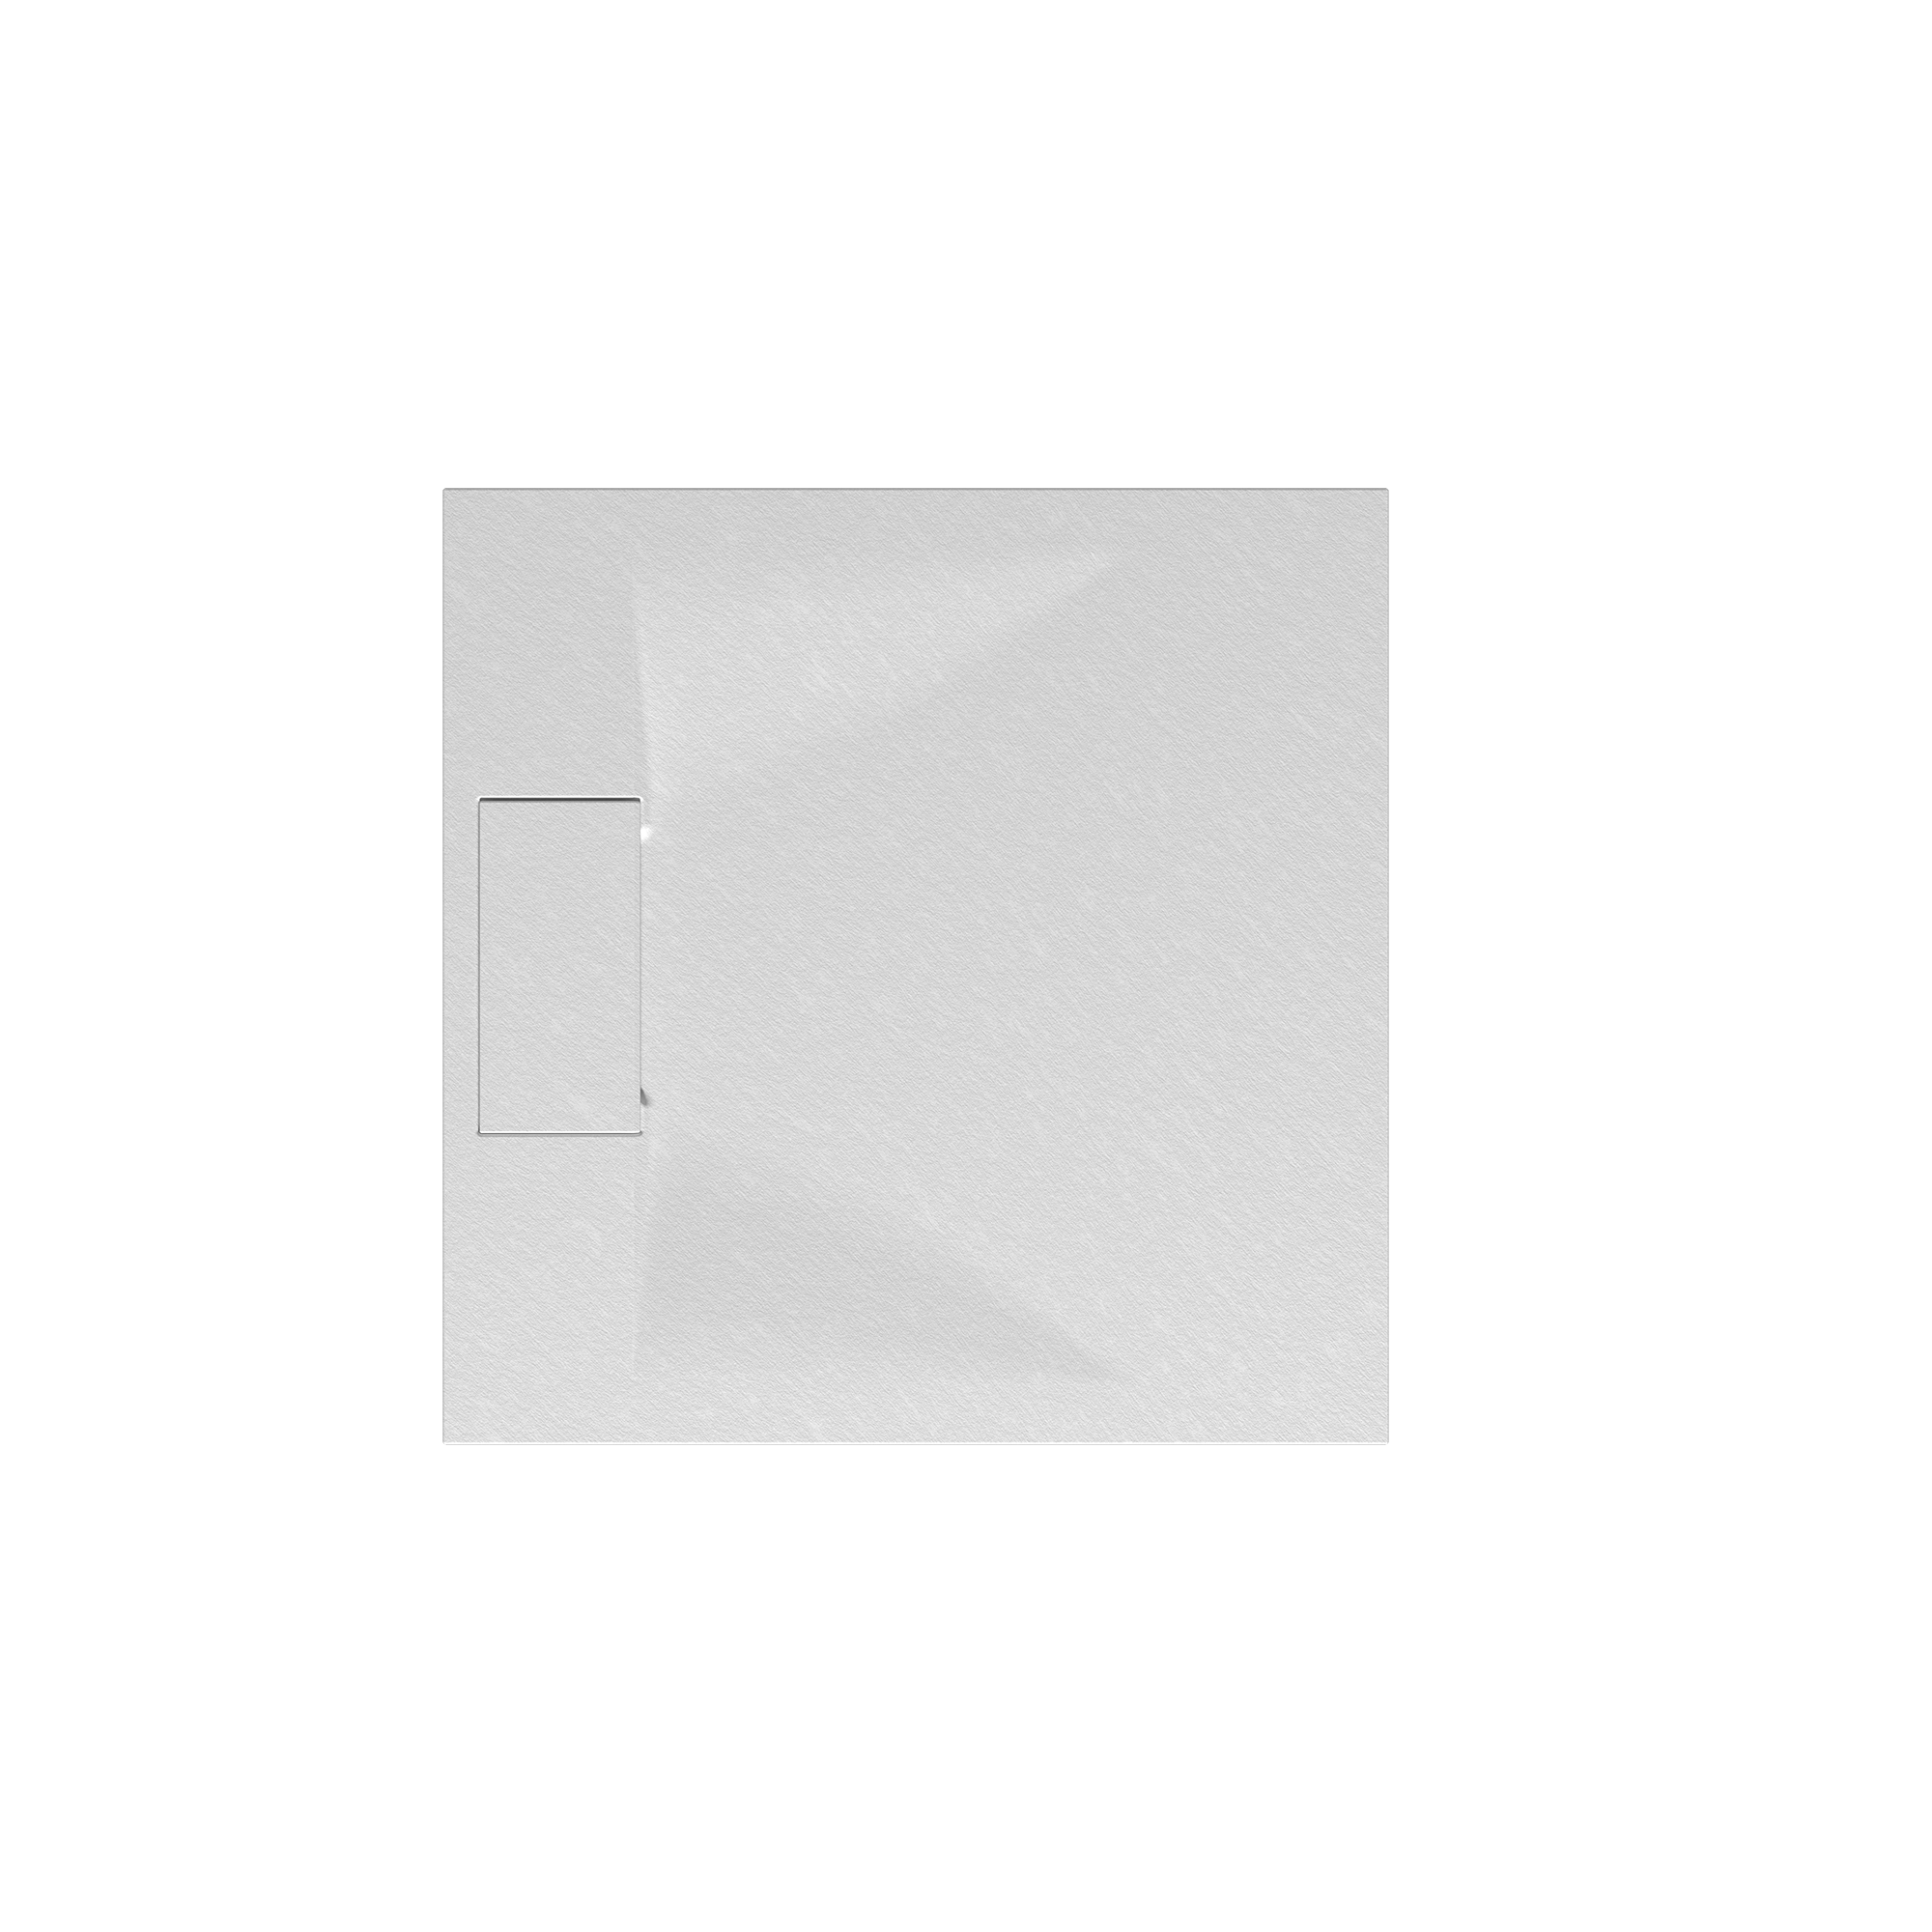 Duschwanne 'Lite Line' Steinoptik weiß 90 x 90 cm + product picture